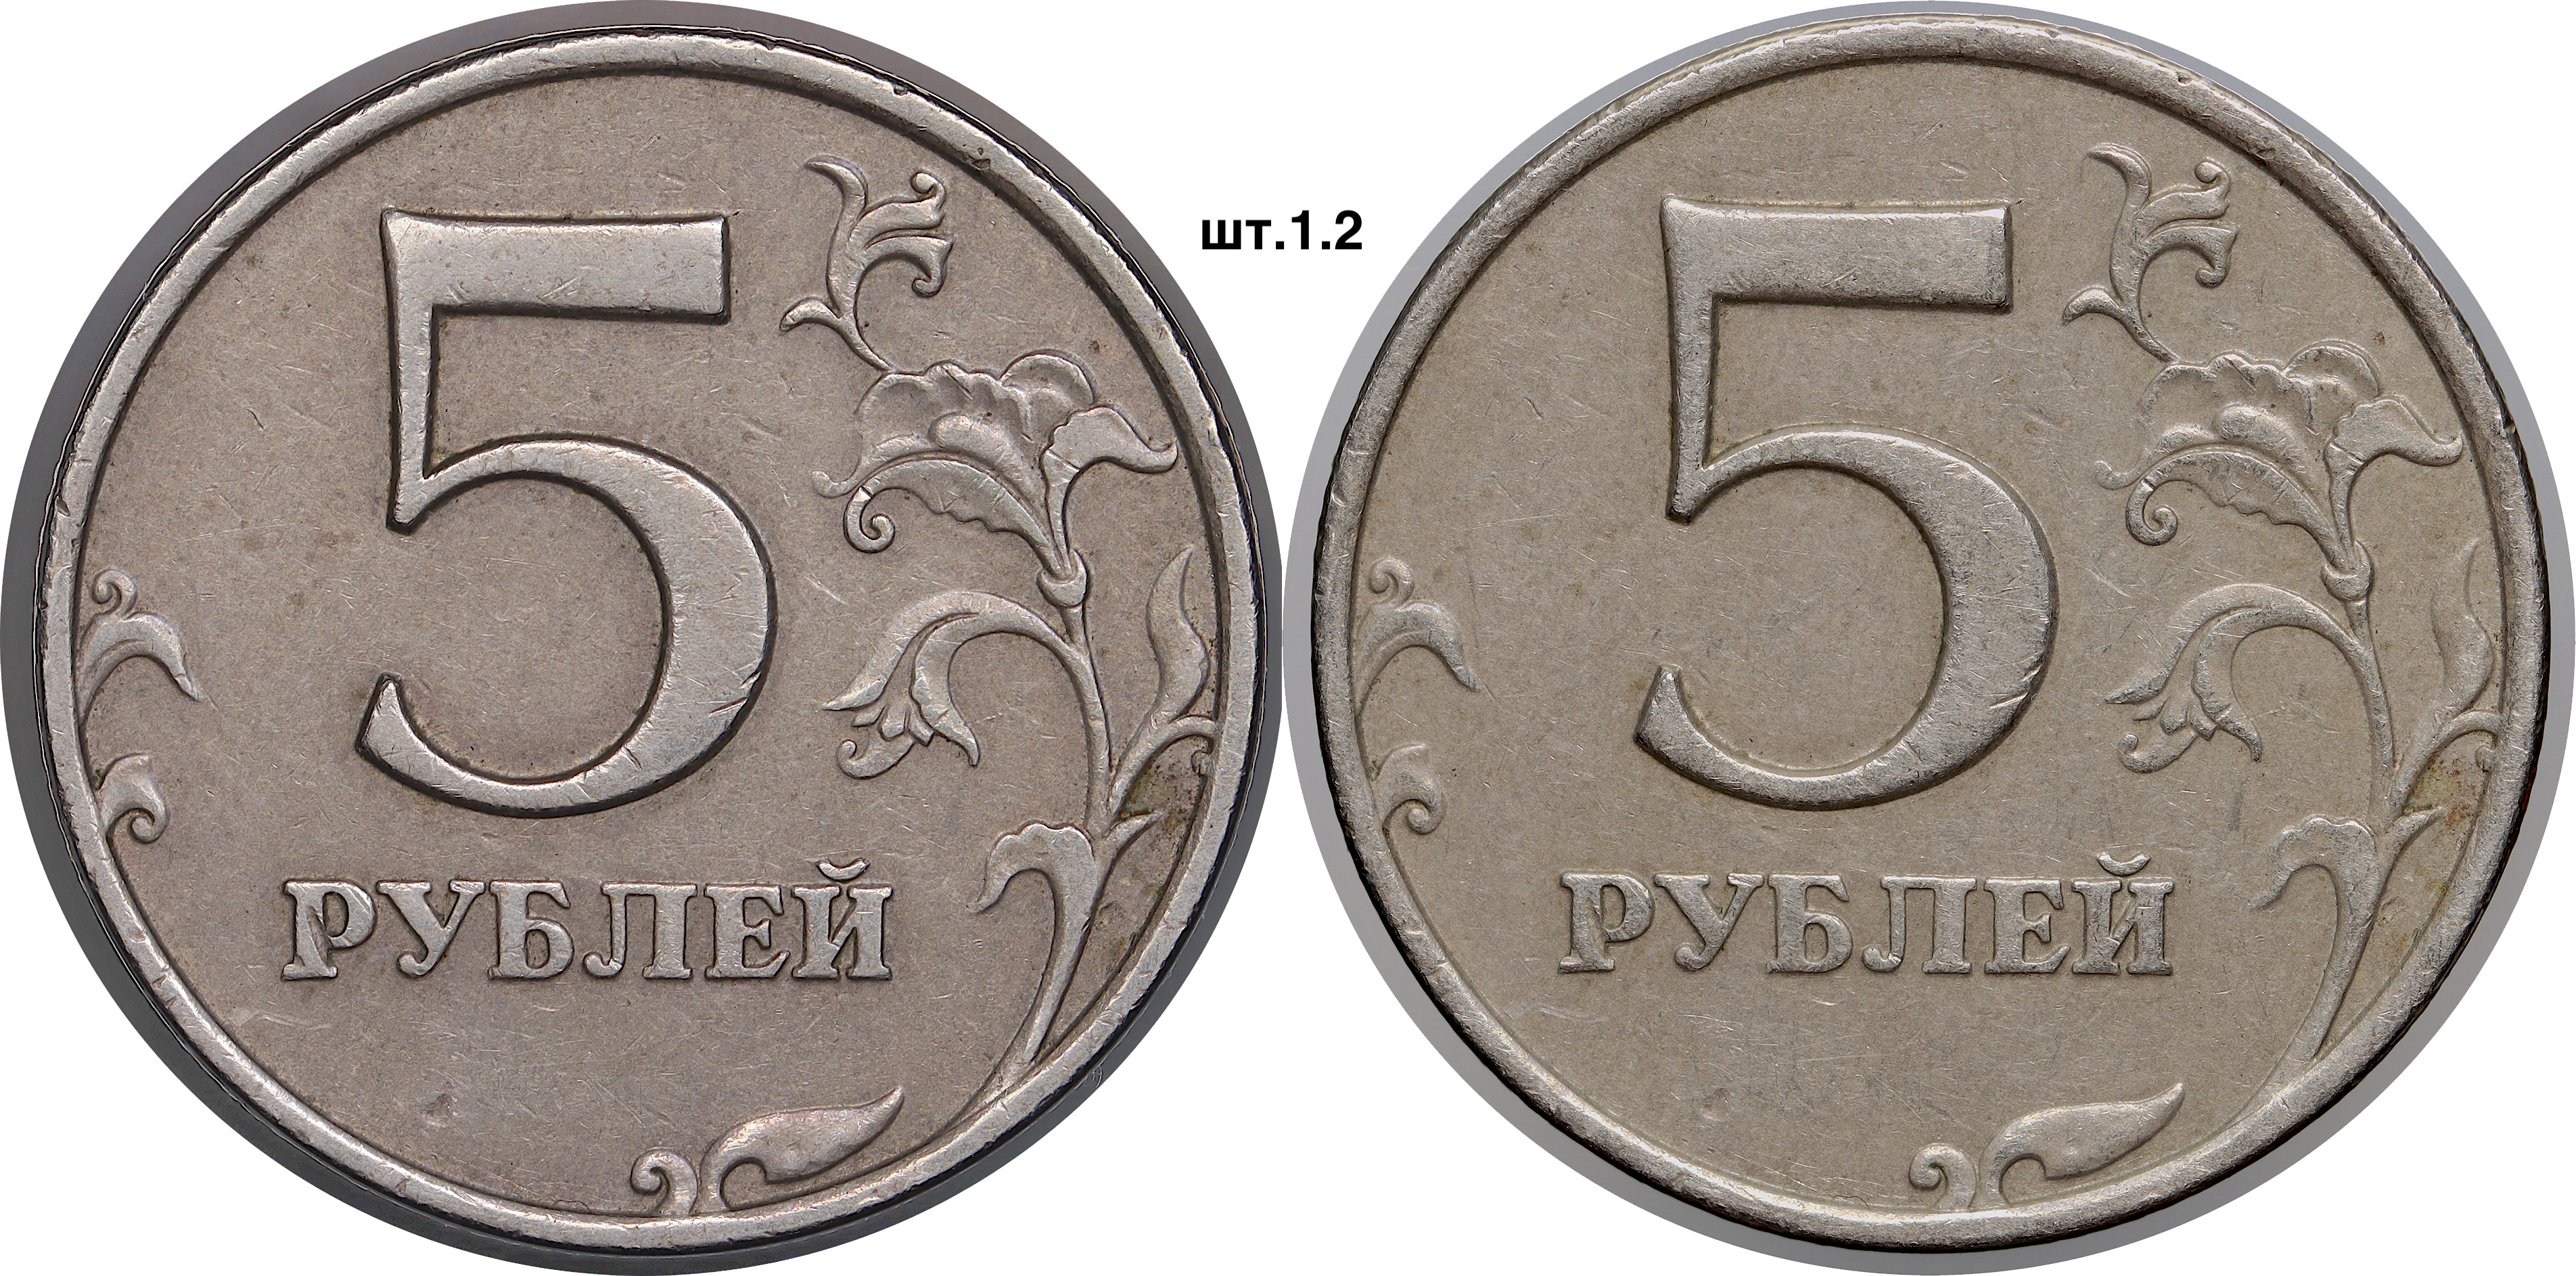 5 рублей 1998 ммд реверс один 1  — копия.JPG